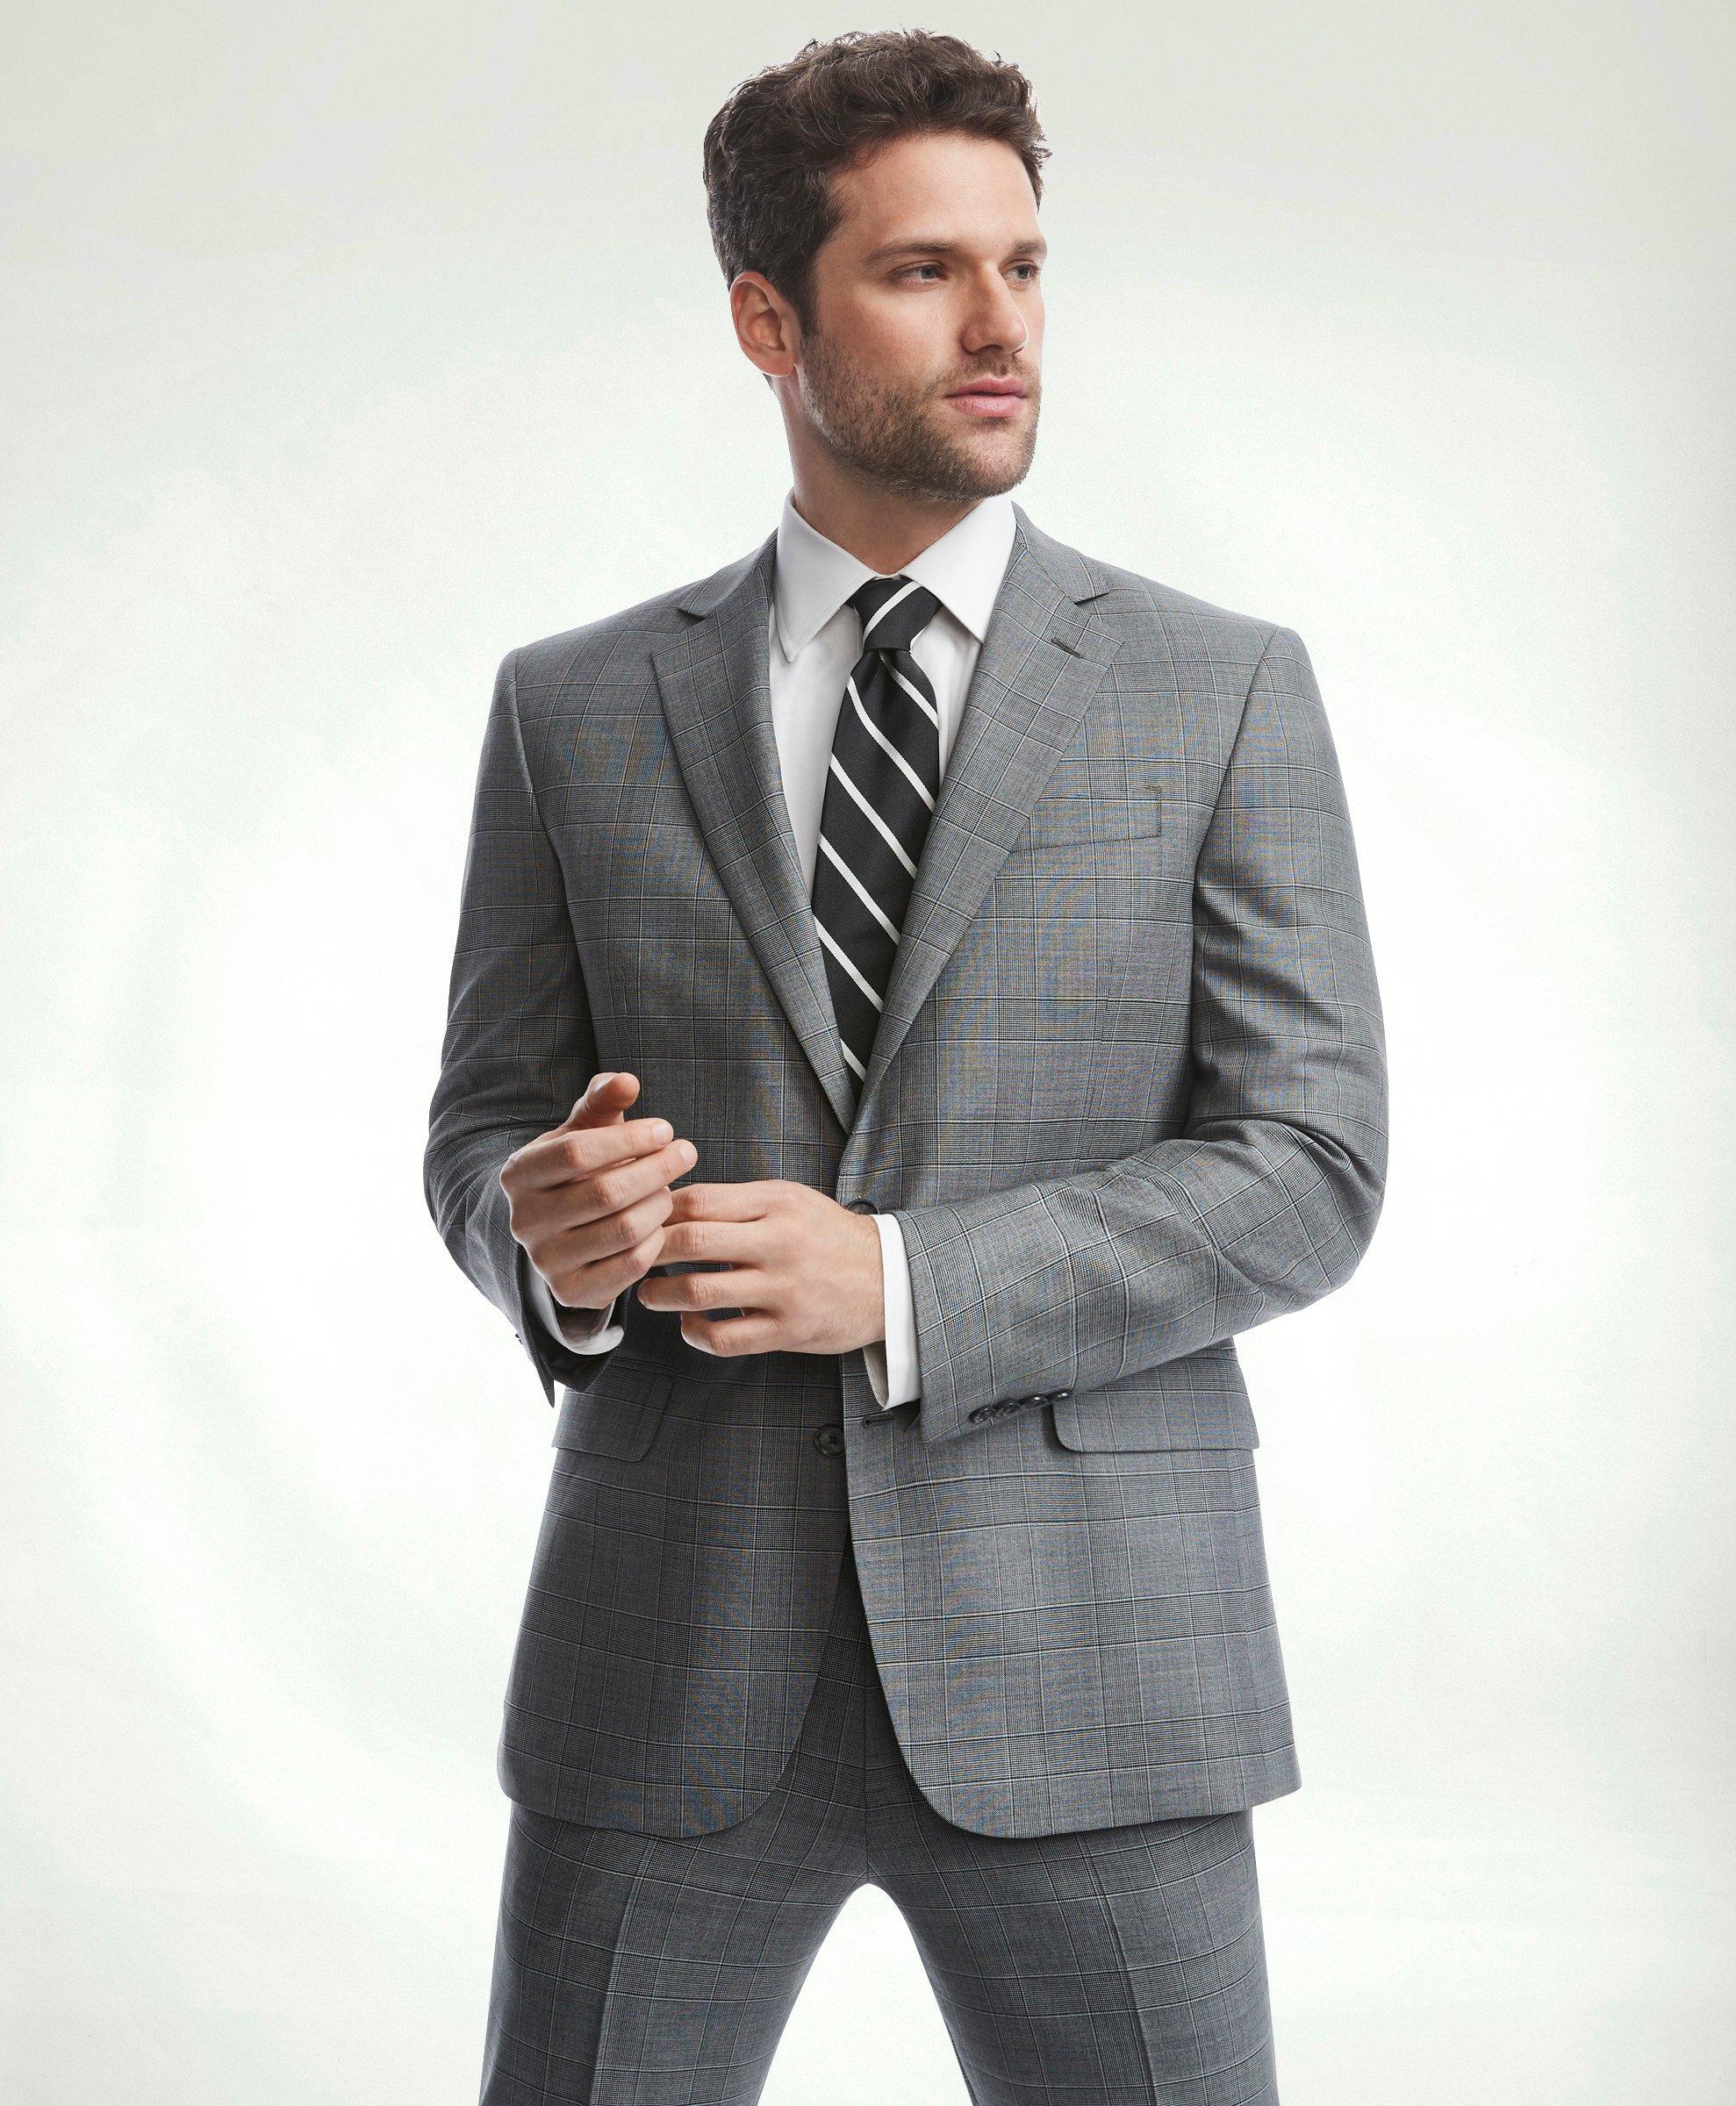 Men's Suits & Suit Separates